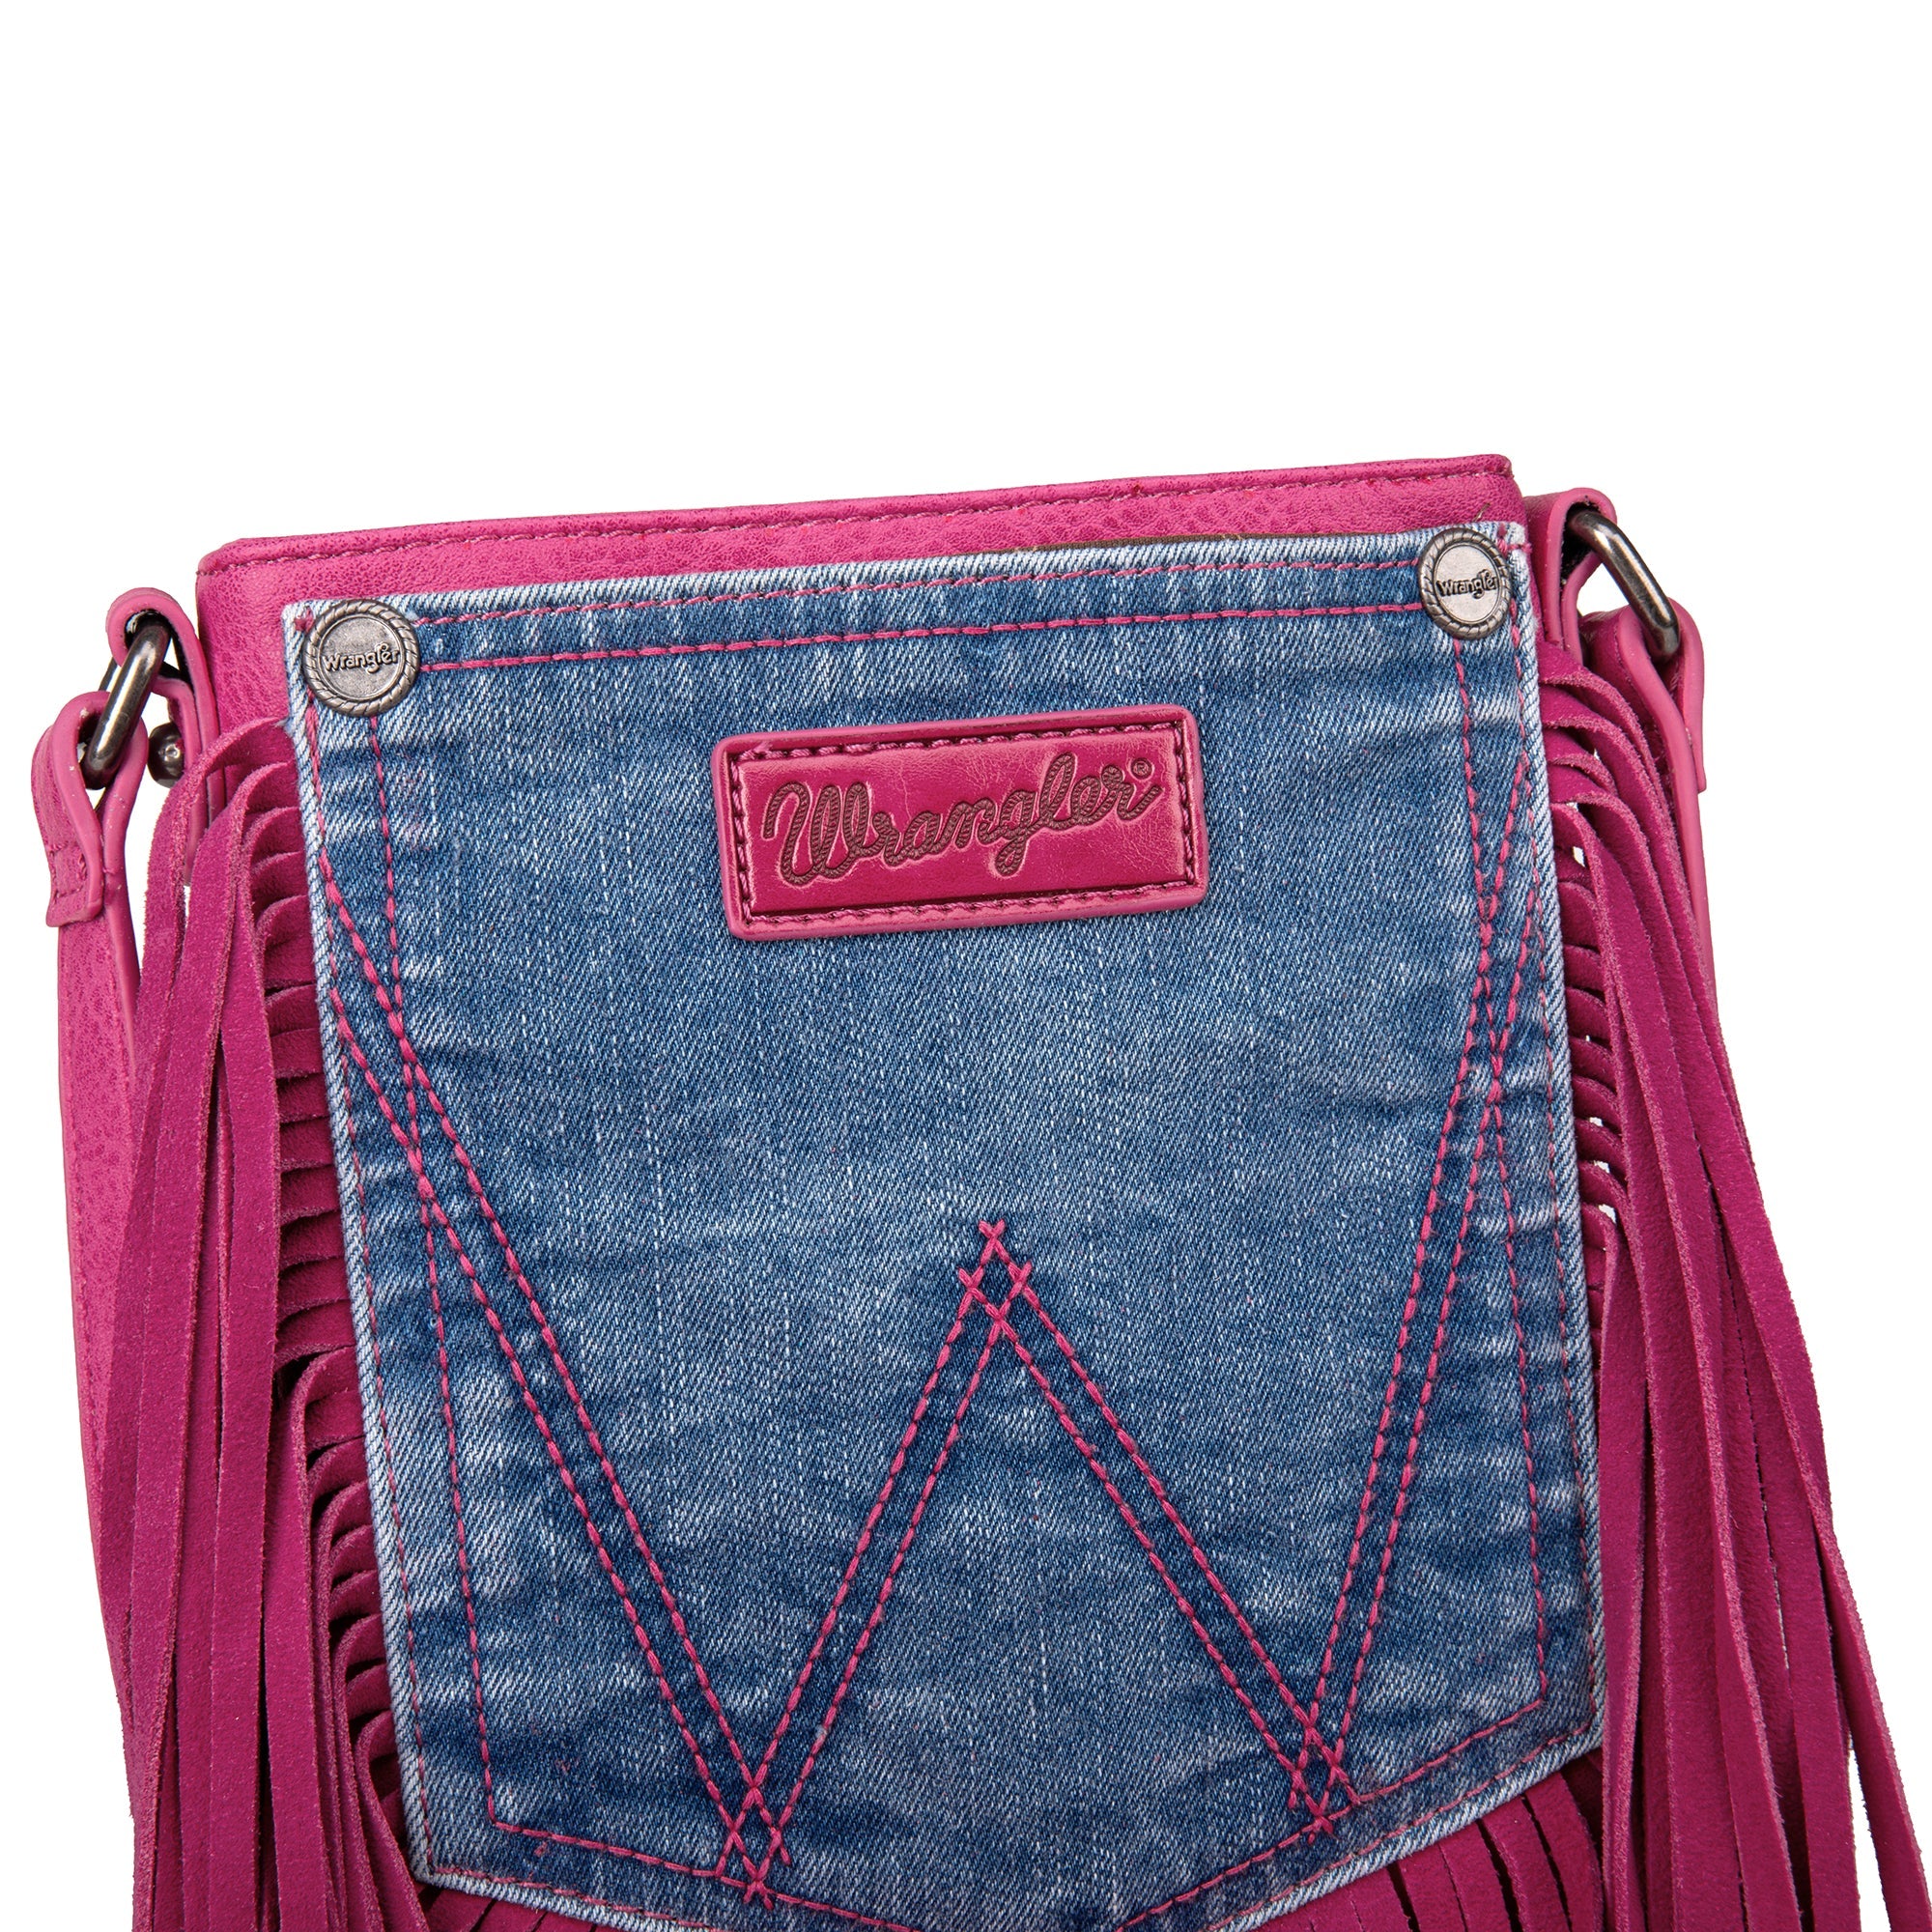 pink fringe purse